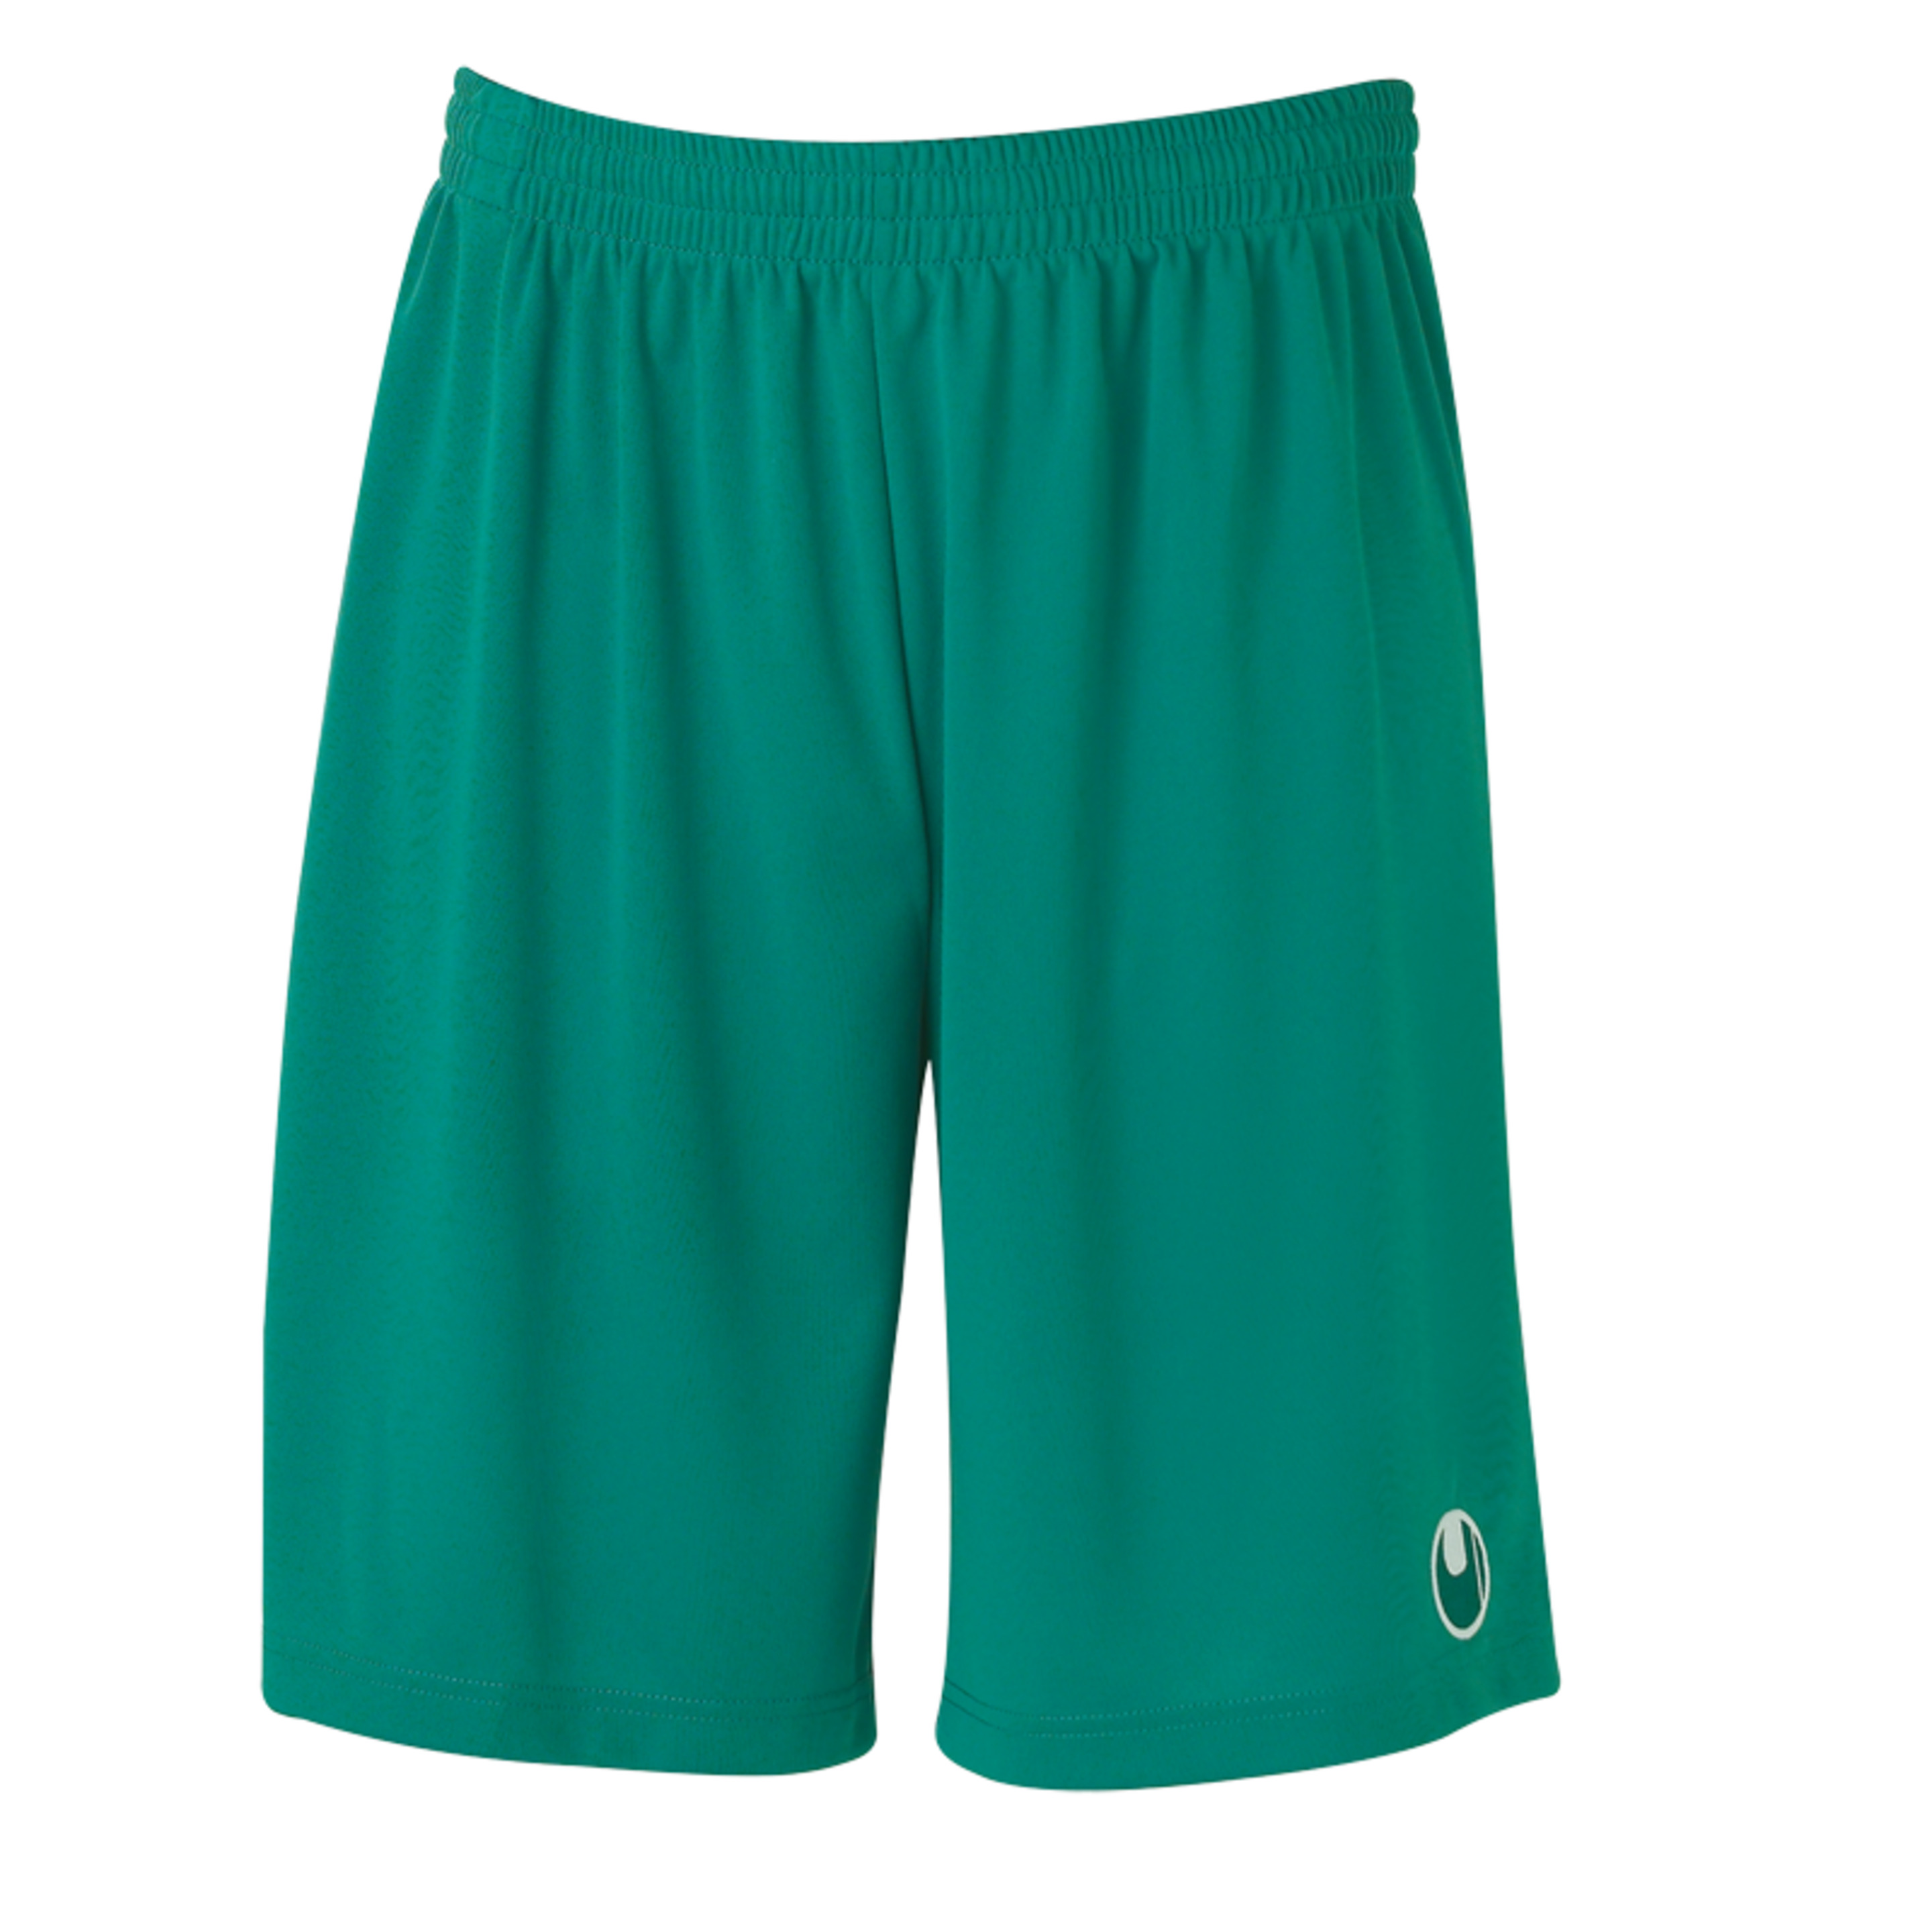 Center Ii Shorts With Slip Inside Lagoon Uhlsport - verde-oliva - 